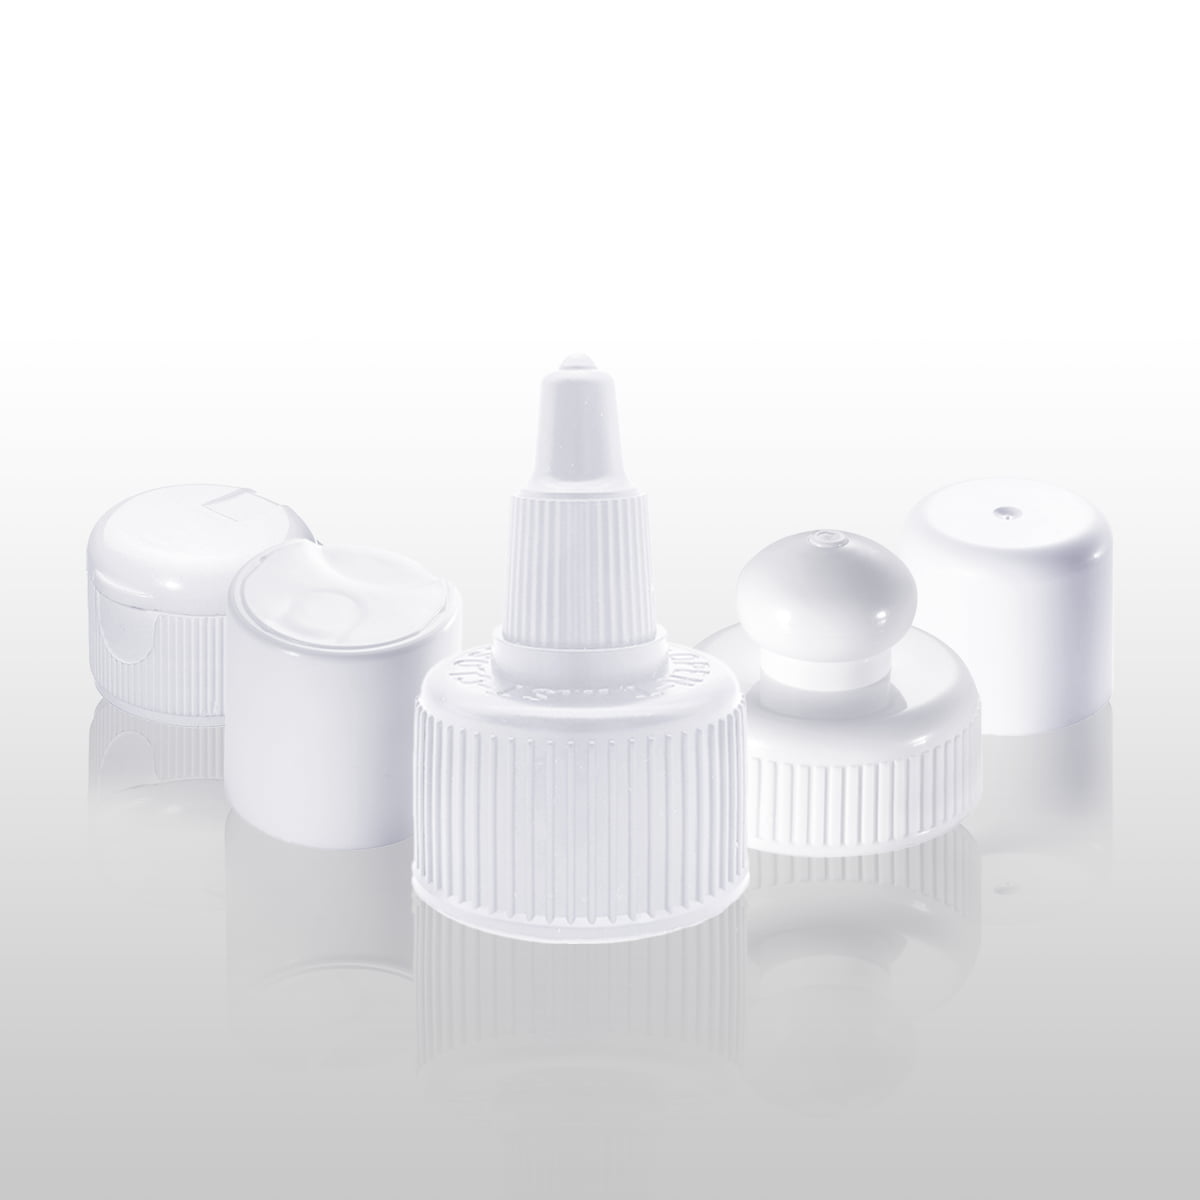 Living Fountain Plastic Industrial Co., Ltd Plastic Cap Manufacturer